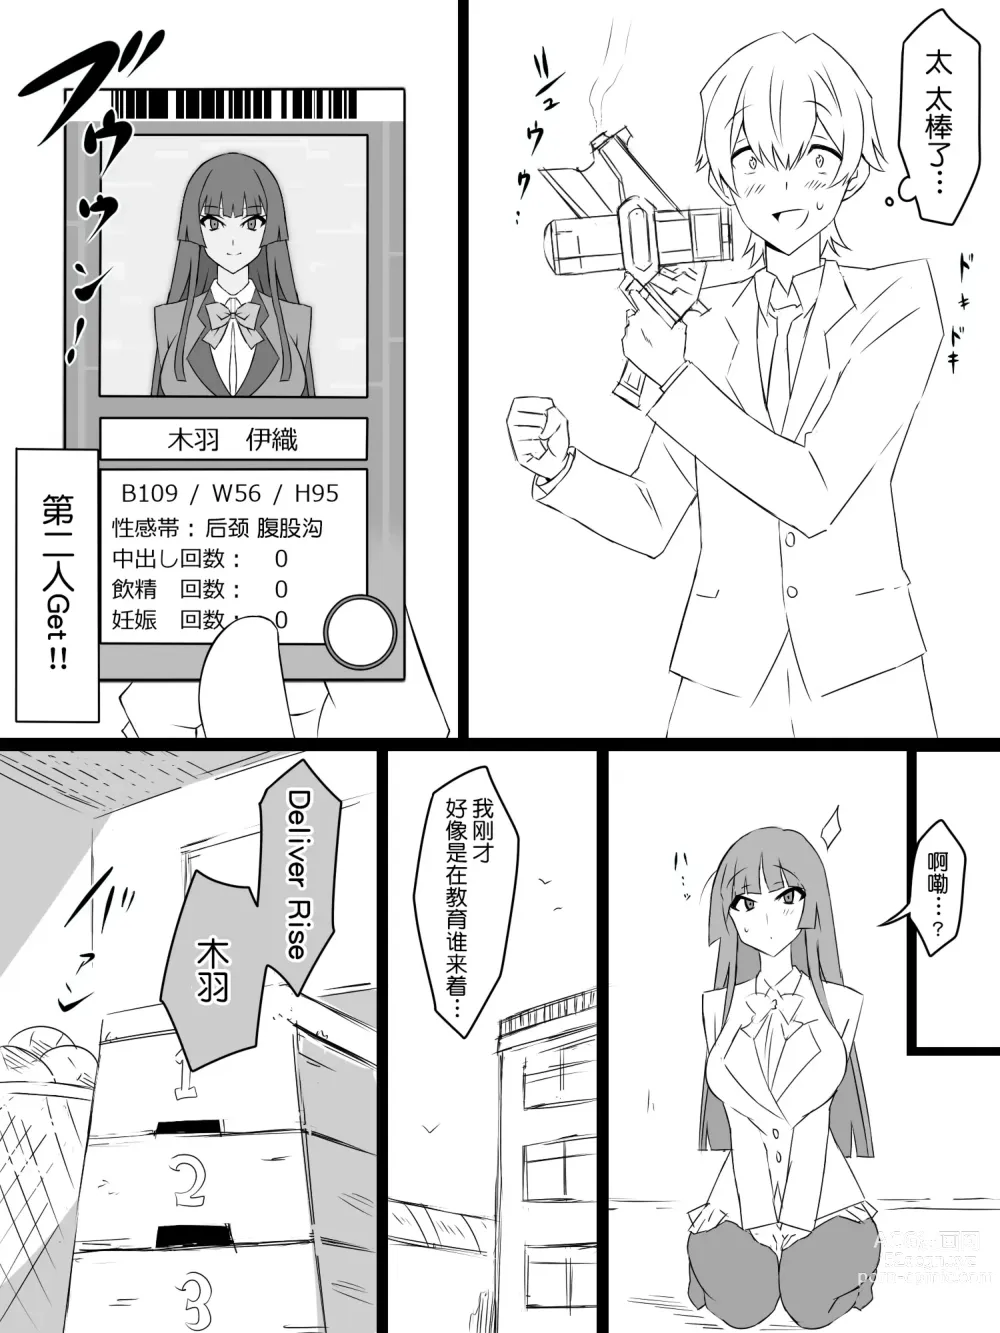 Page 15 of doujinshi Shoukanjuu DX DeliHealizer